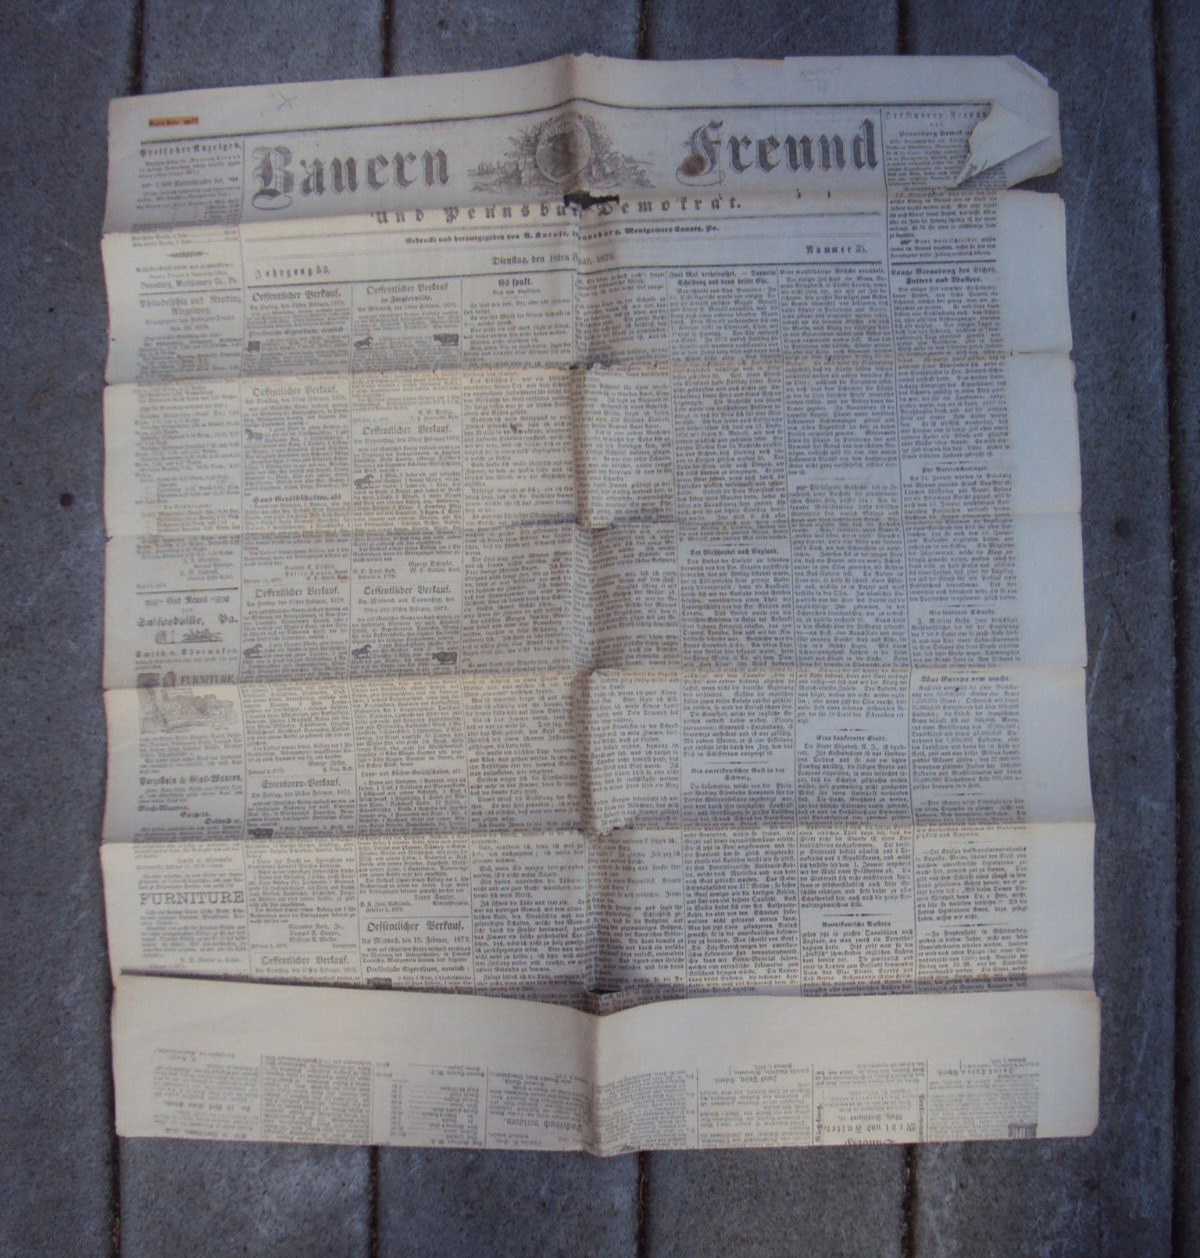 Bauern Freund Pennsburg PA German Language  Deinstag Feb 18 1879 Vol 53 No 35 D